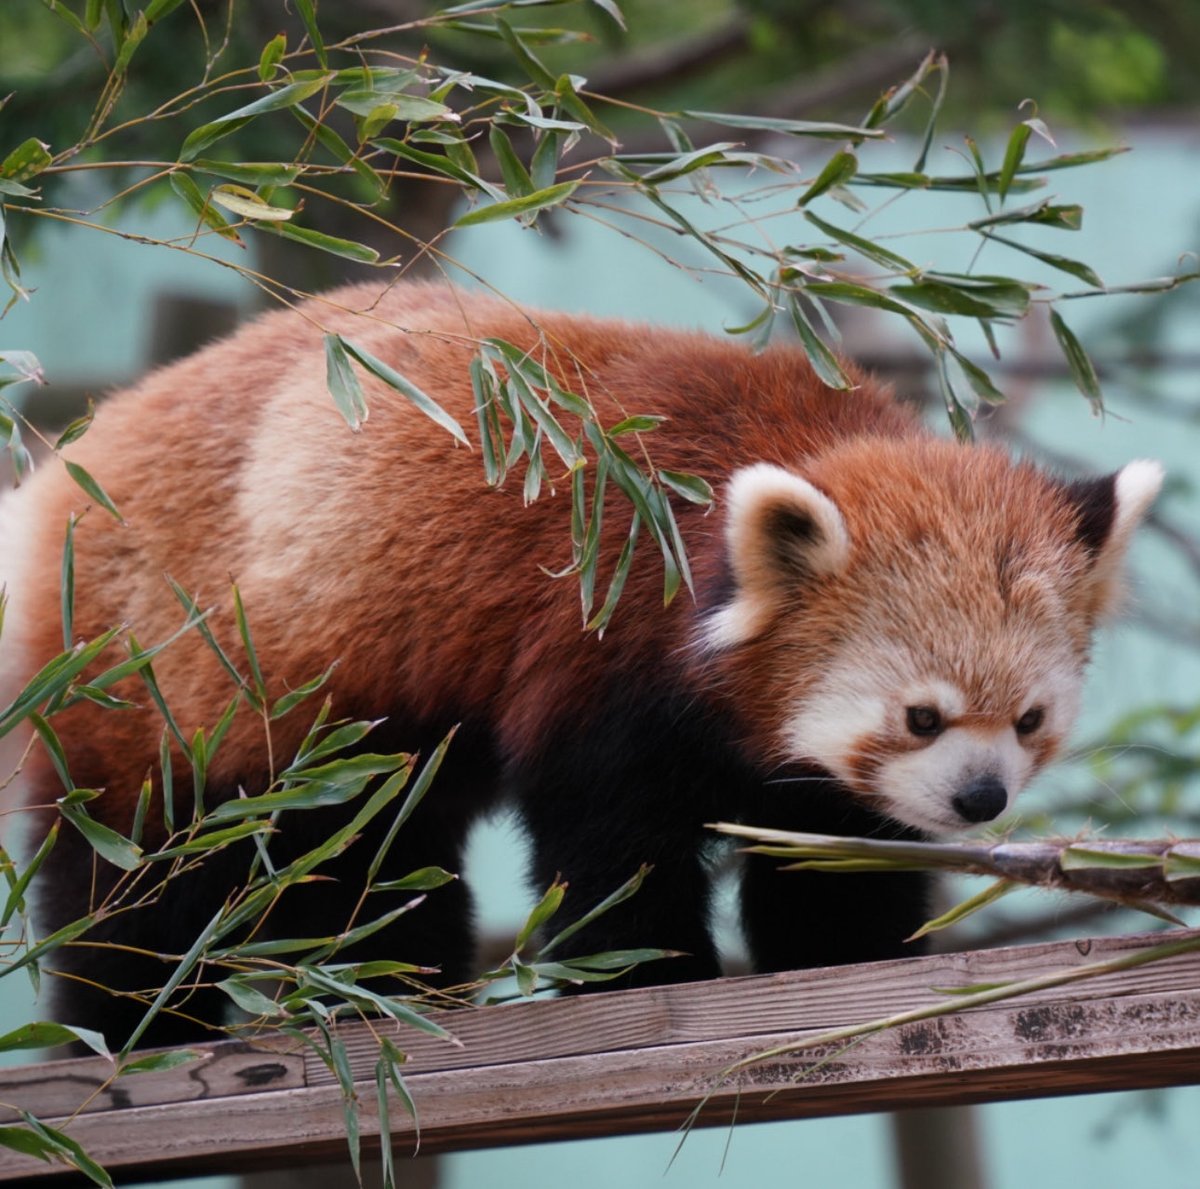 タイちゃんも匂いを嗅ぐだけ
昨年は食べてたよね？

#千葉市動物公園　#レッサーパンダ
#タイヨウ